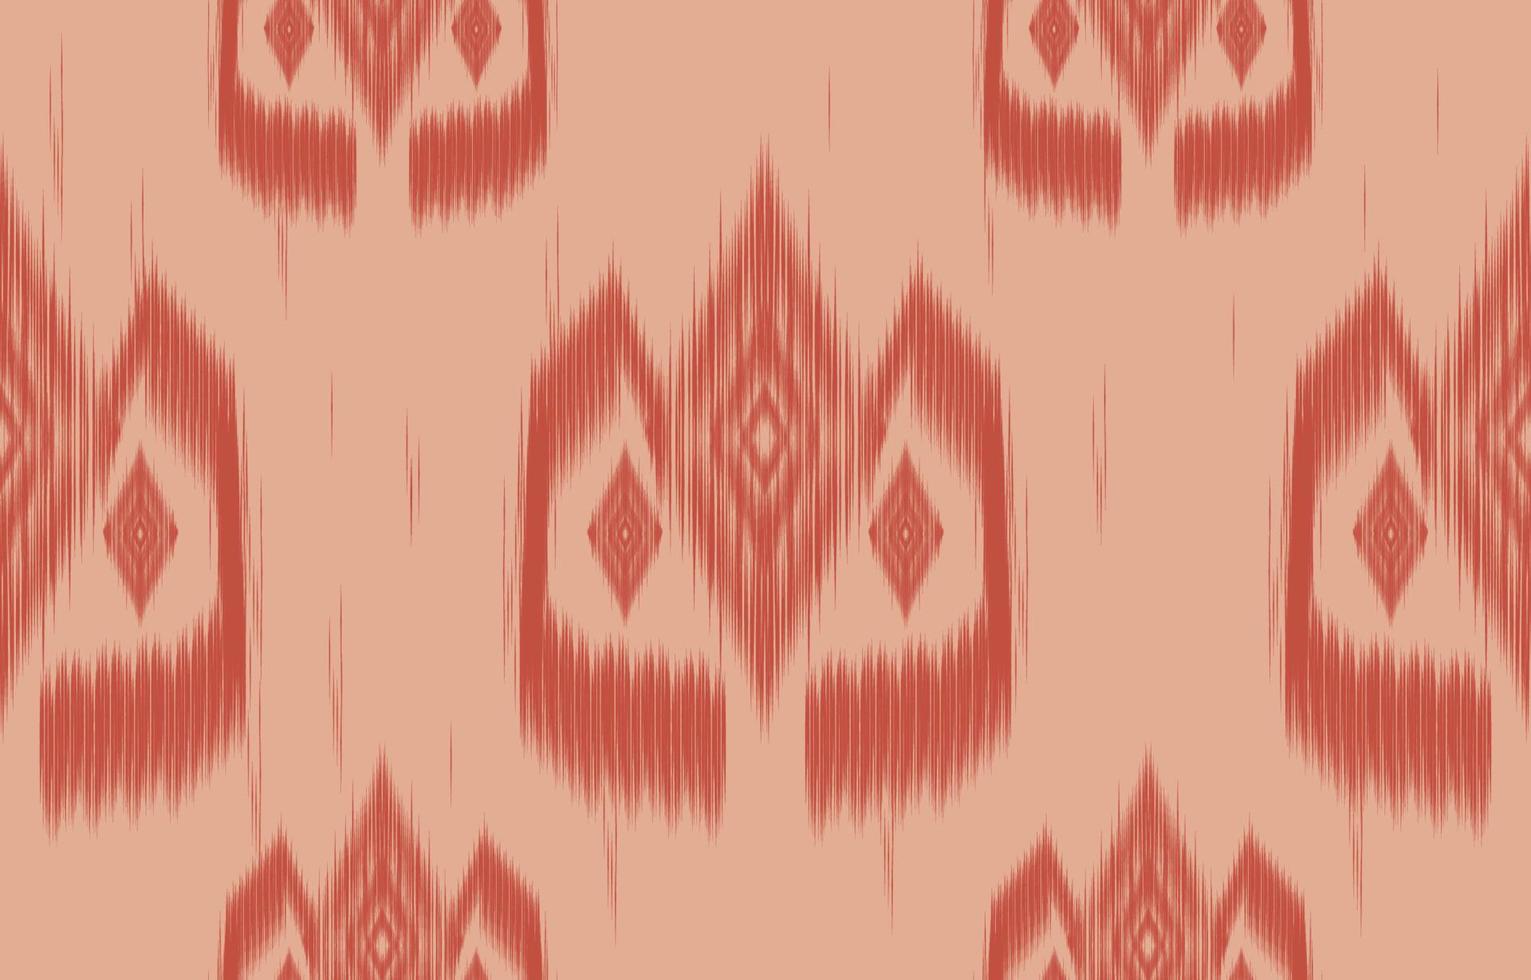 ikat naranja de patrones sin fisuras geométrico étnico oriental bordado tradicional style.design para fondo, alfombra, estera, papel pintado, ropa, envoltura, batik, tela, ilustración vectorial. vector